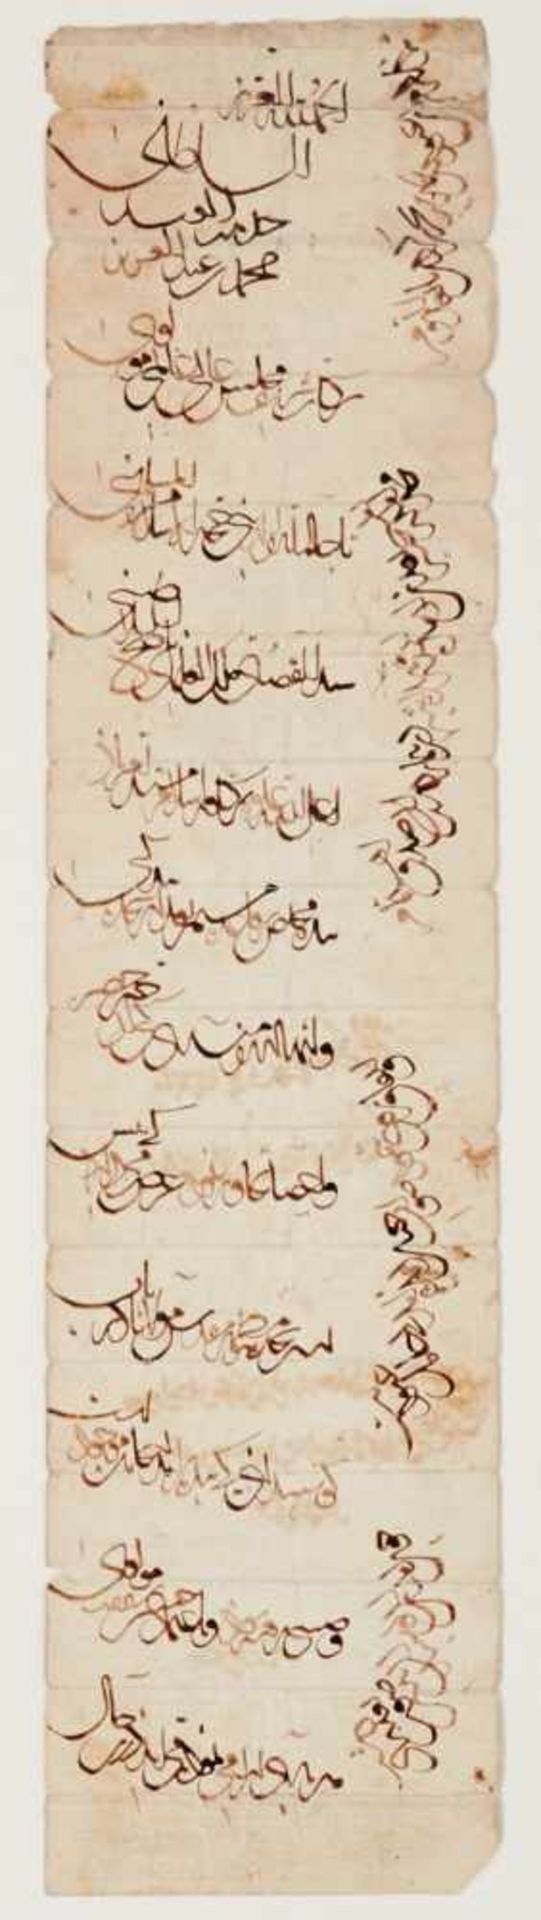 Zauberrolle -Arabische Handschrift auf Papier. 19. Jhdt. 52,5 x 12,8 cm. Schrift in brauner, verso